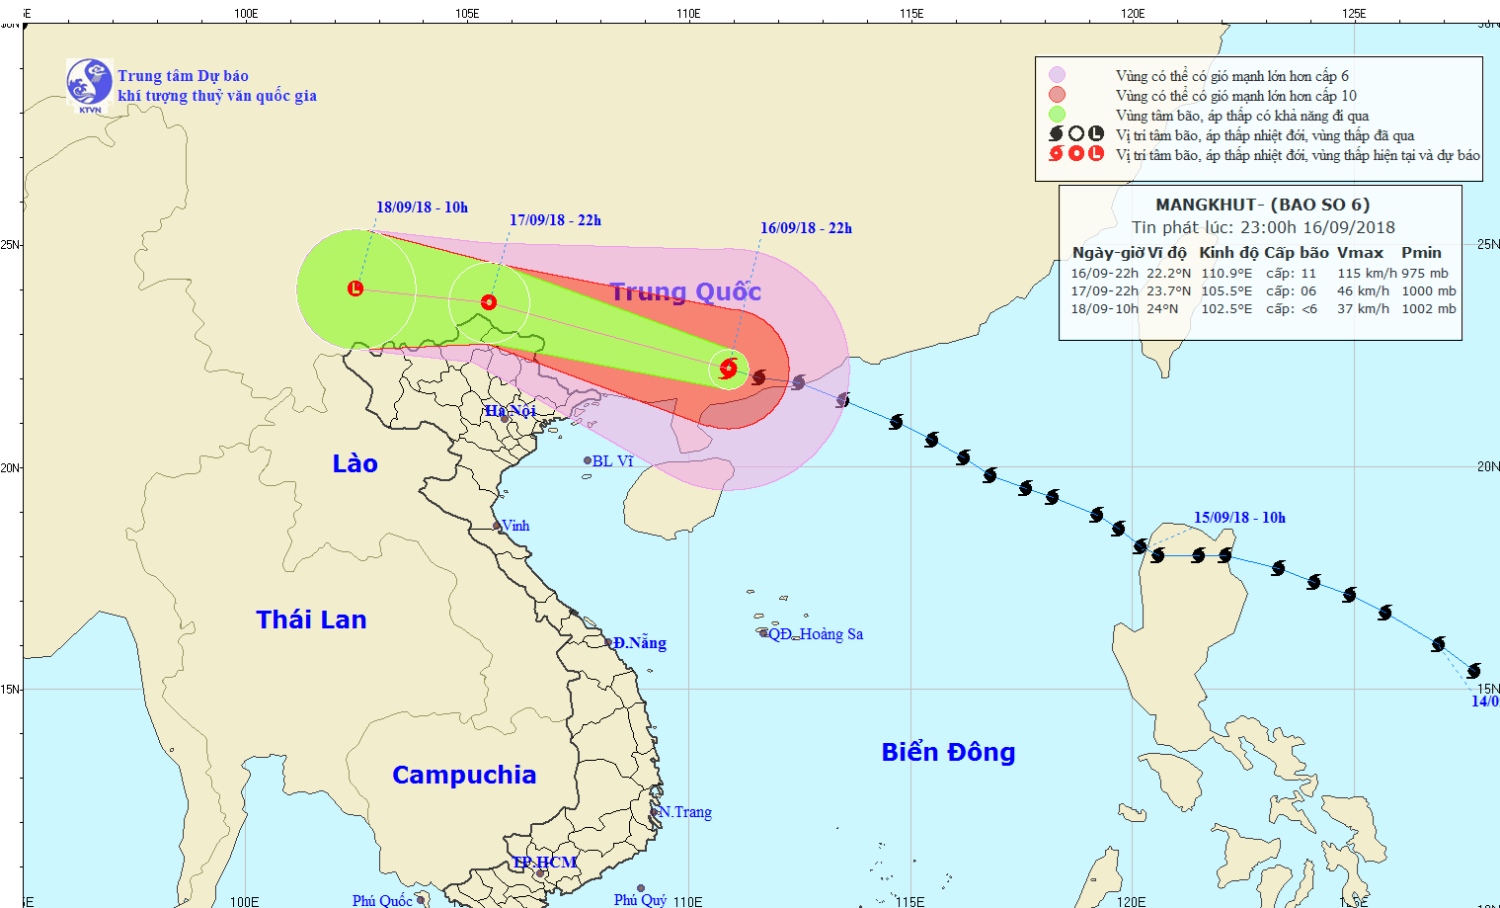 Tin bão trên đất liền Trung Quốc - cơn bão số 6 (23h00 ngày 16/9)